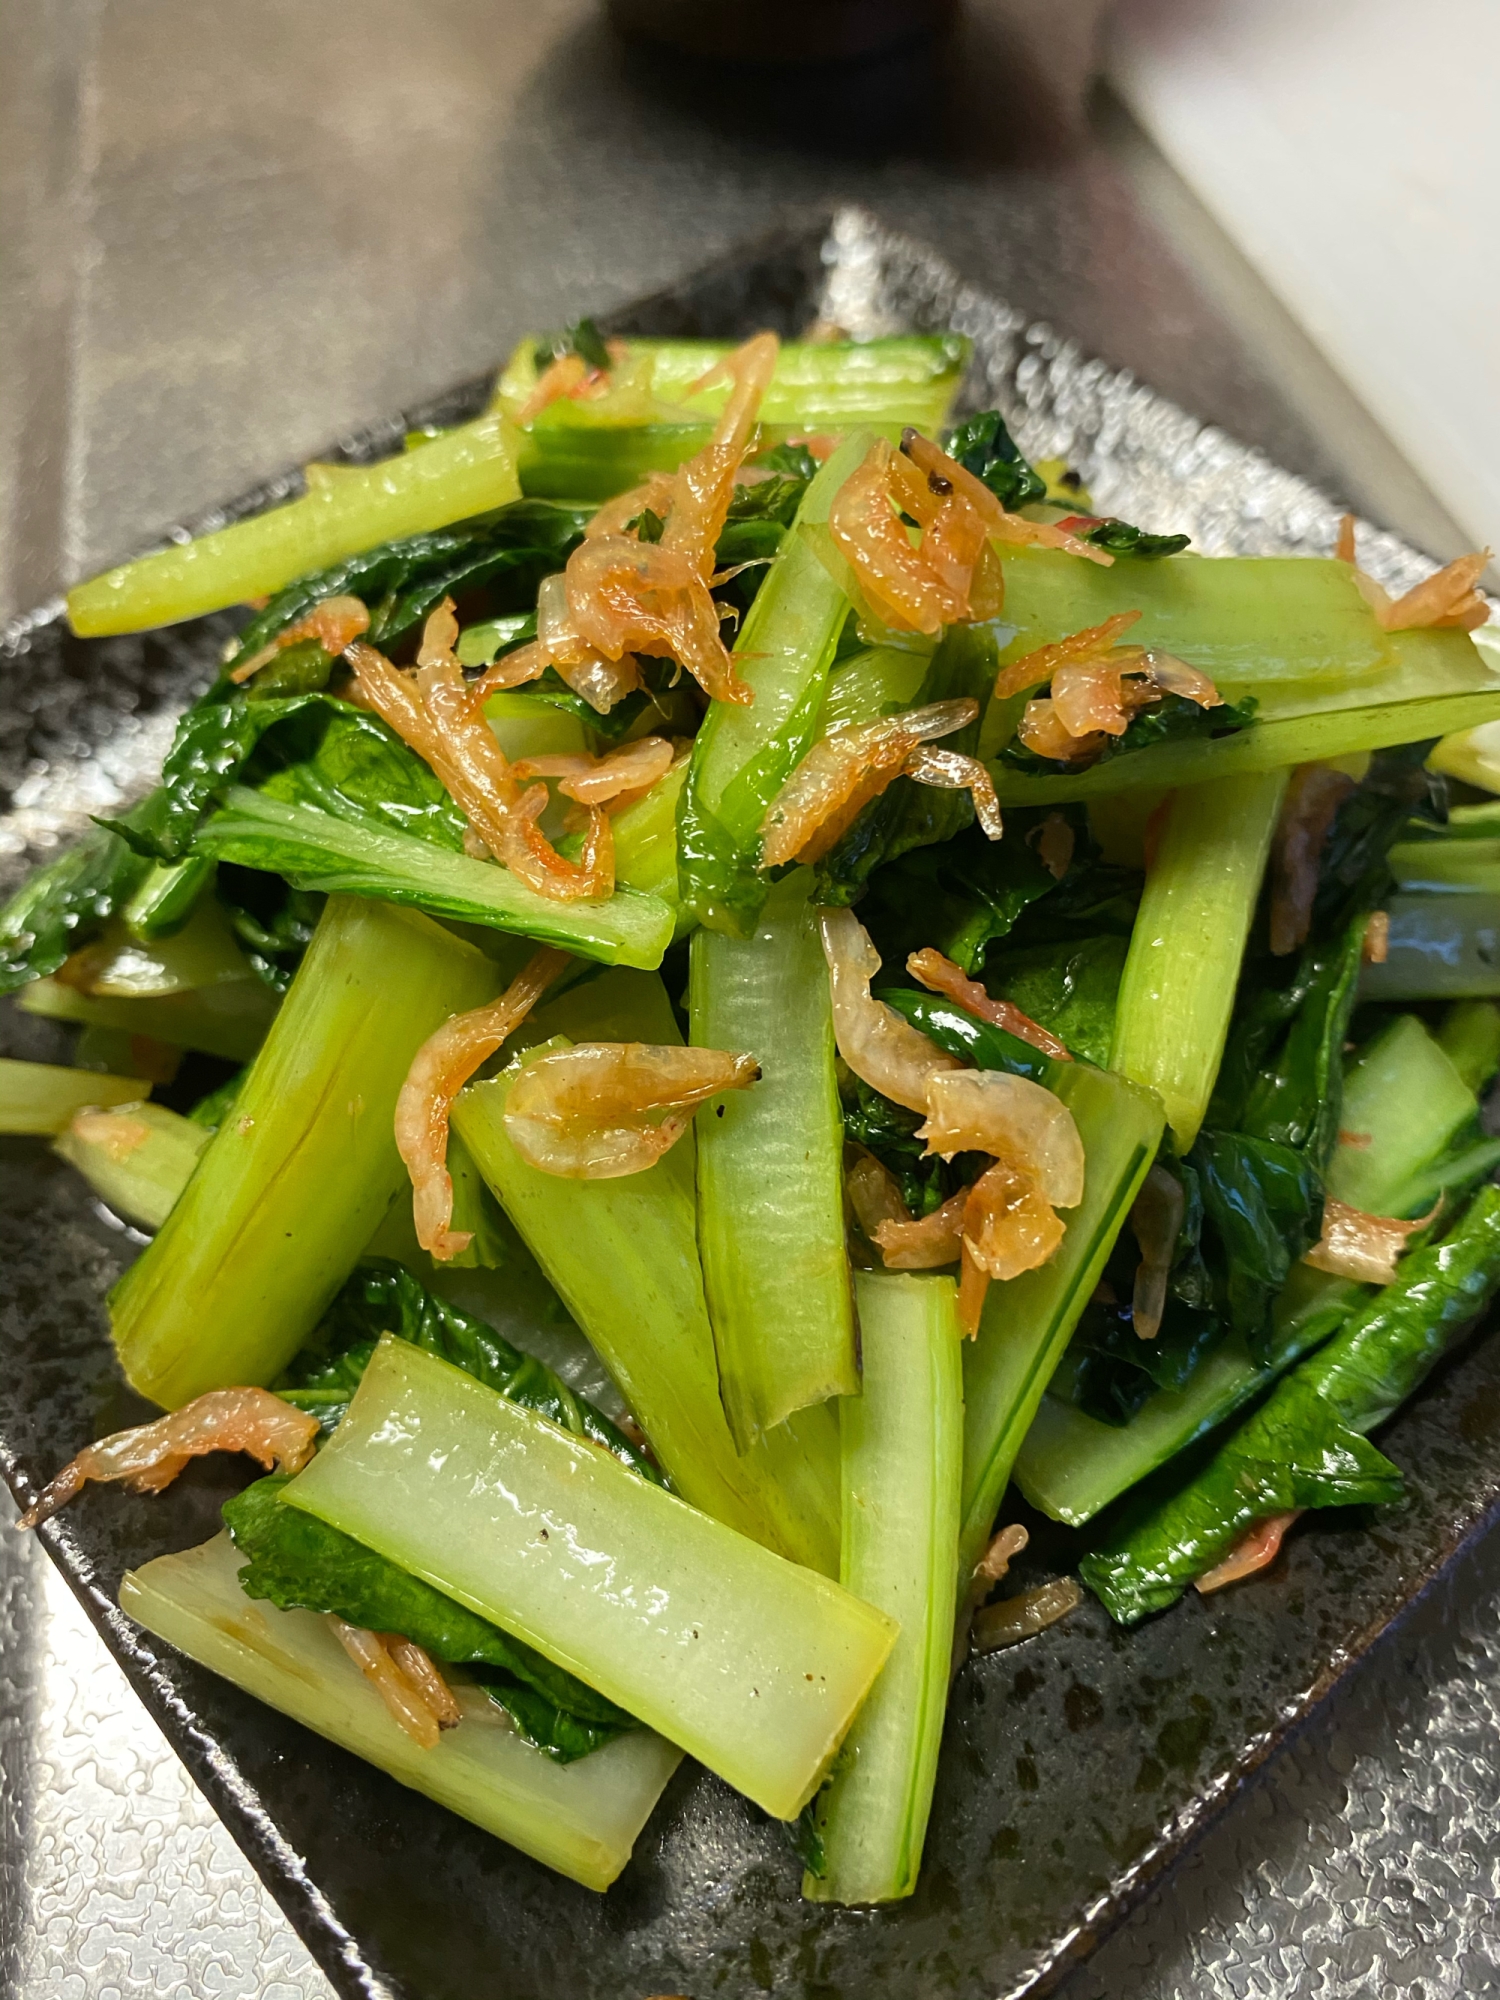 小松菜と小エビの炒め物